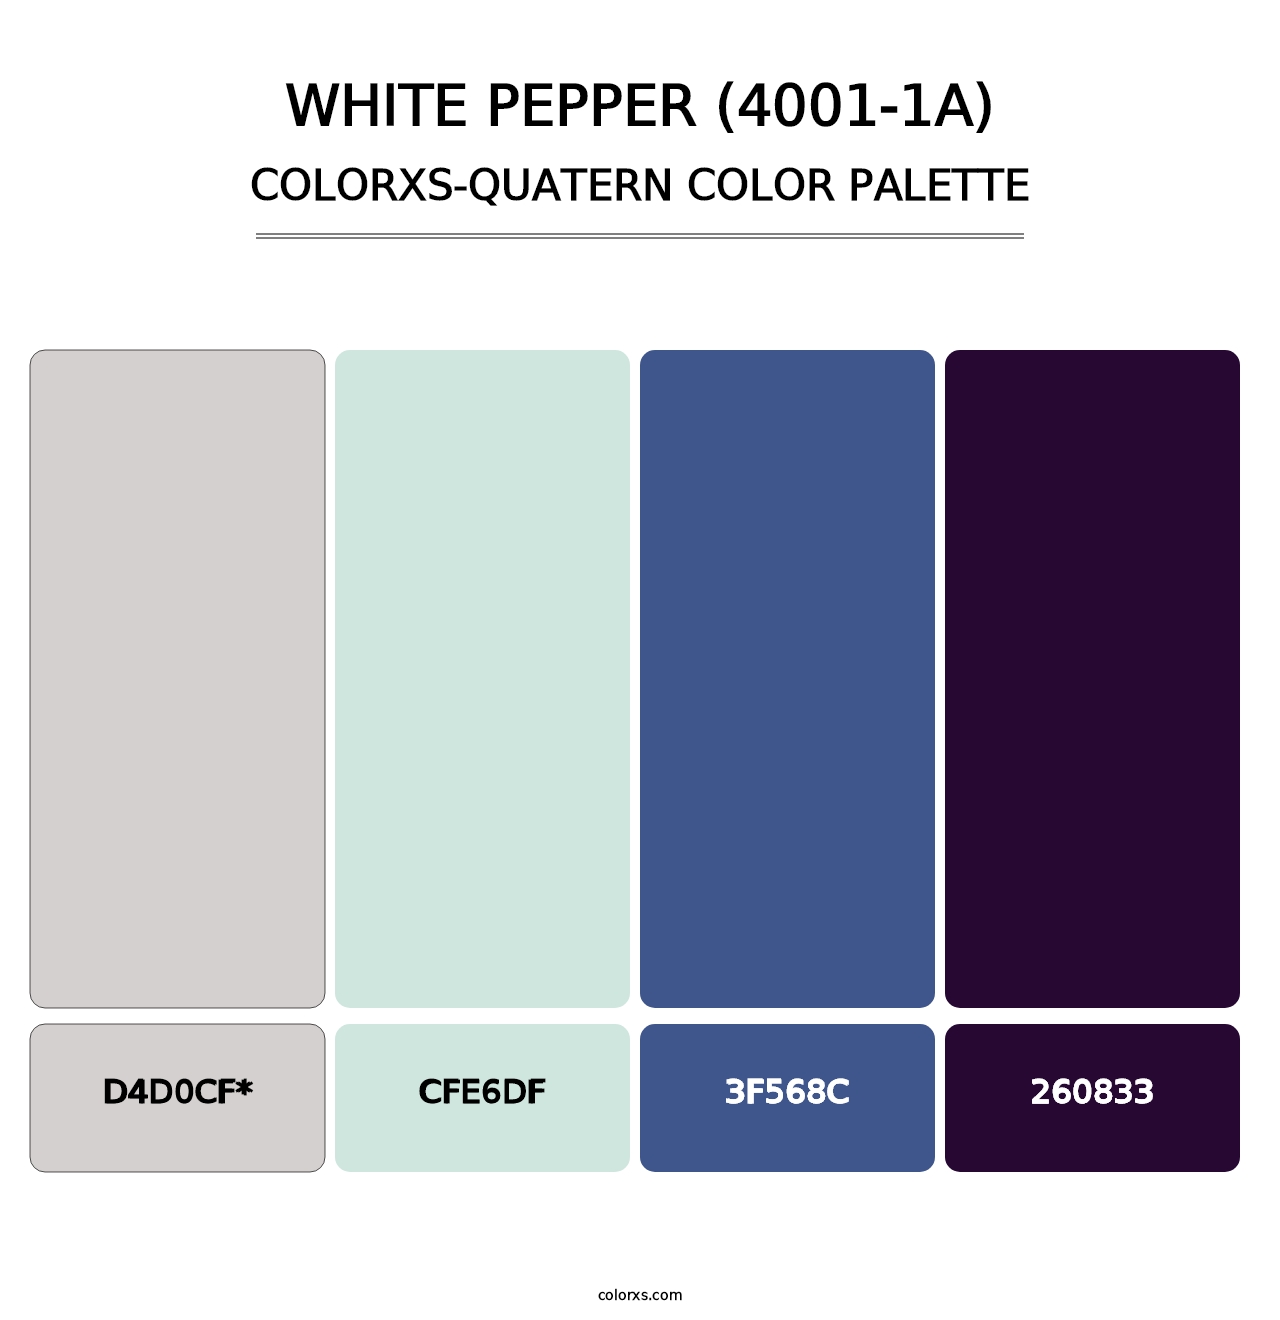 White Pepper (4001-1A) - Colorxs Quatern Palette